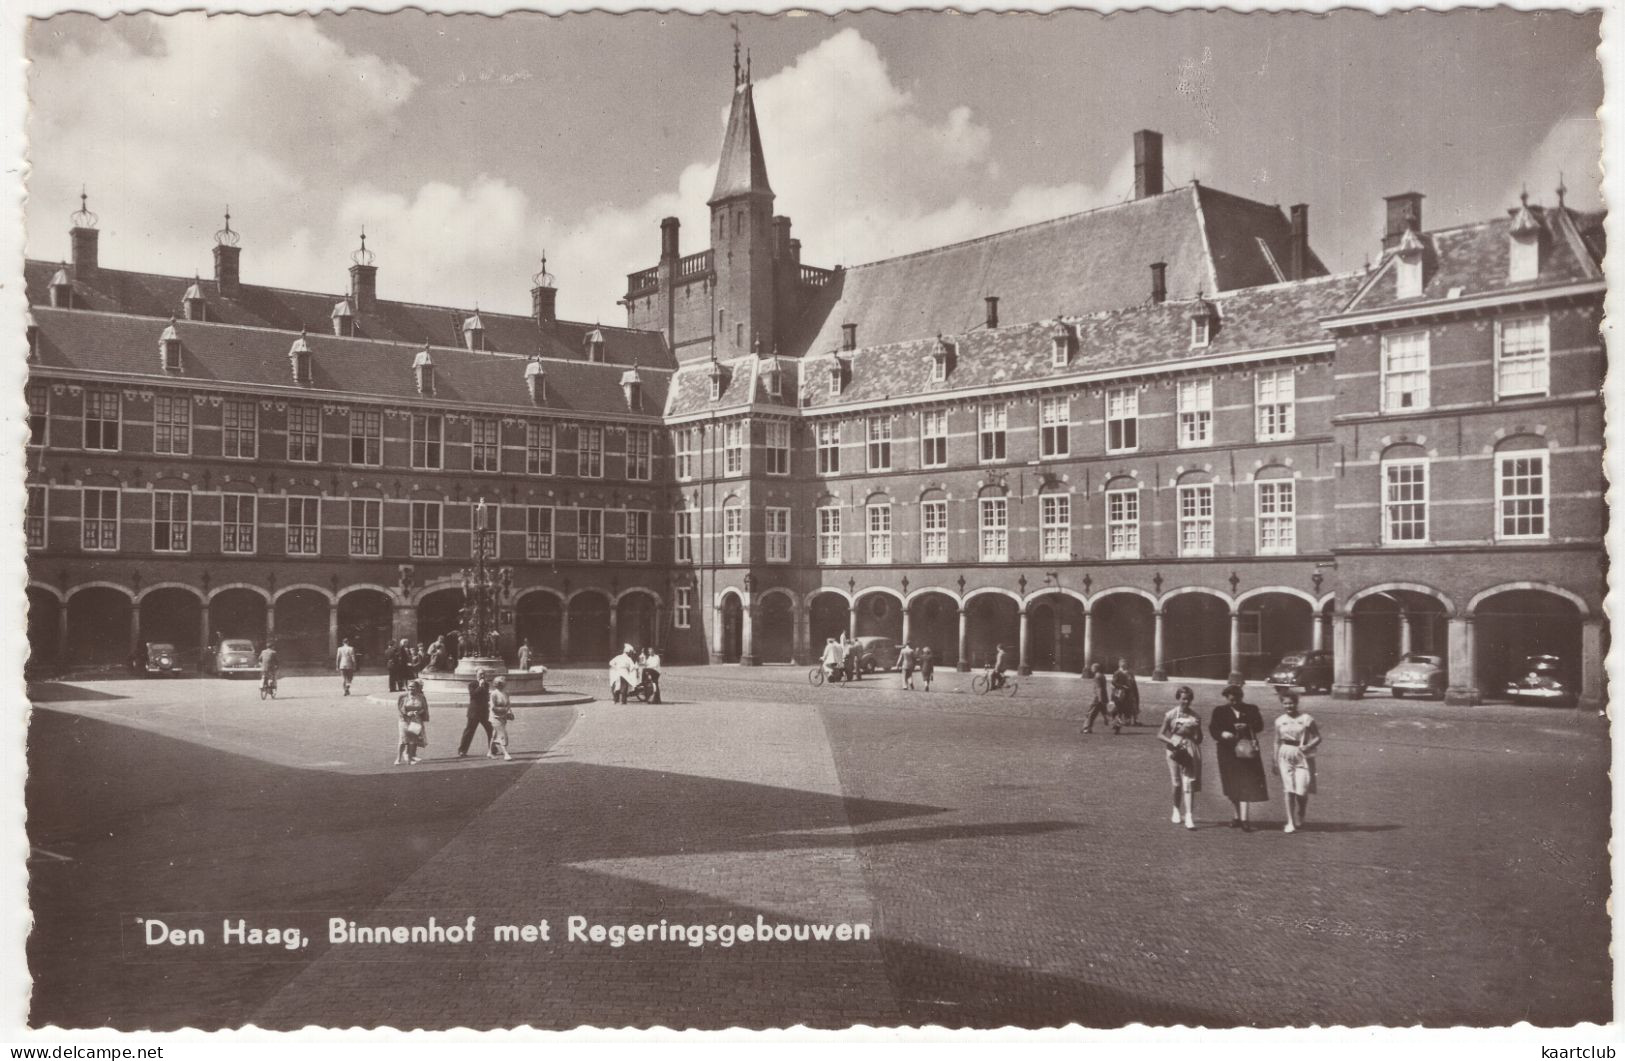 Den Haag: OLDTIMER AUTO'S / CARS & BICYCLES / FIETSEN - Binnenhof Met Regeringsgebouwen - (Holland) - PKW